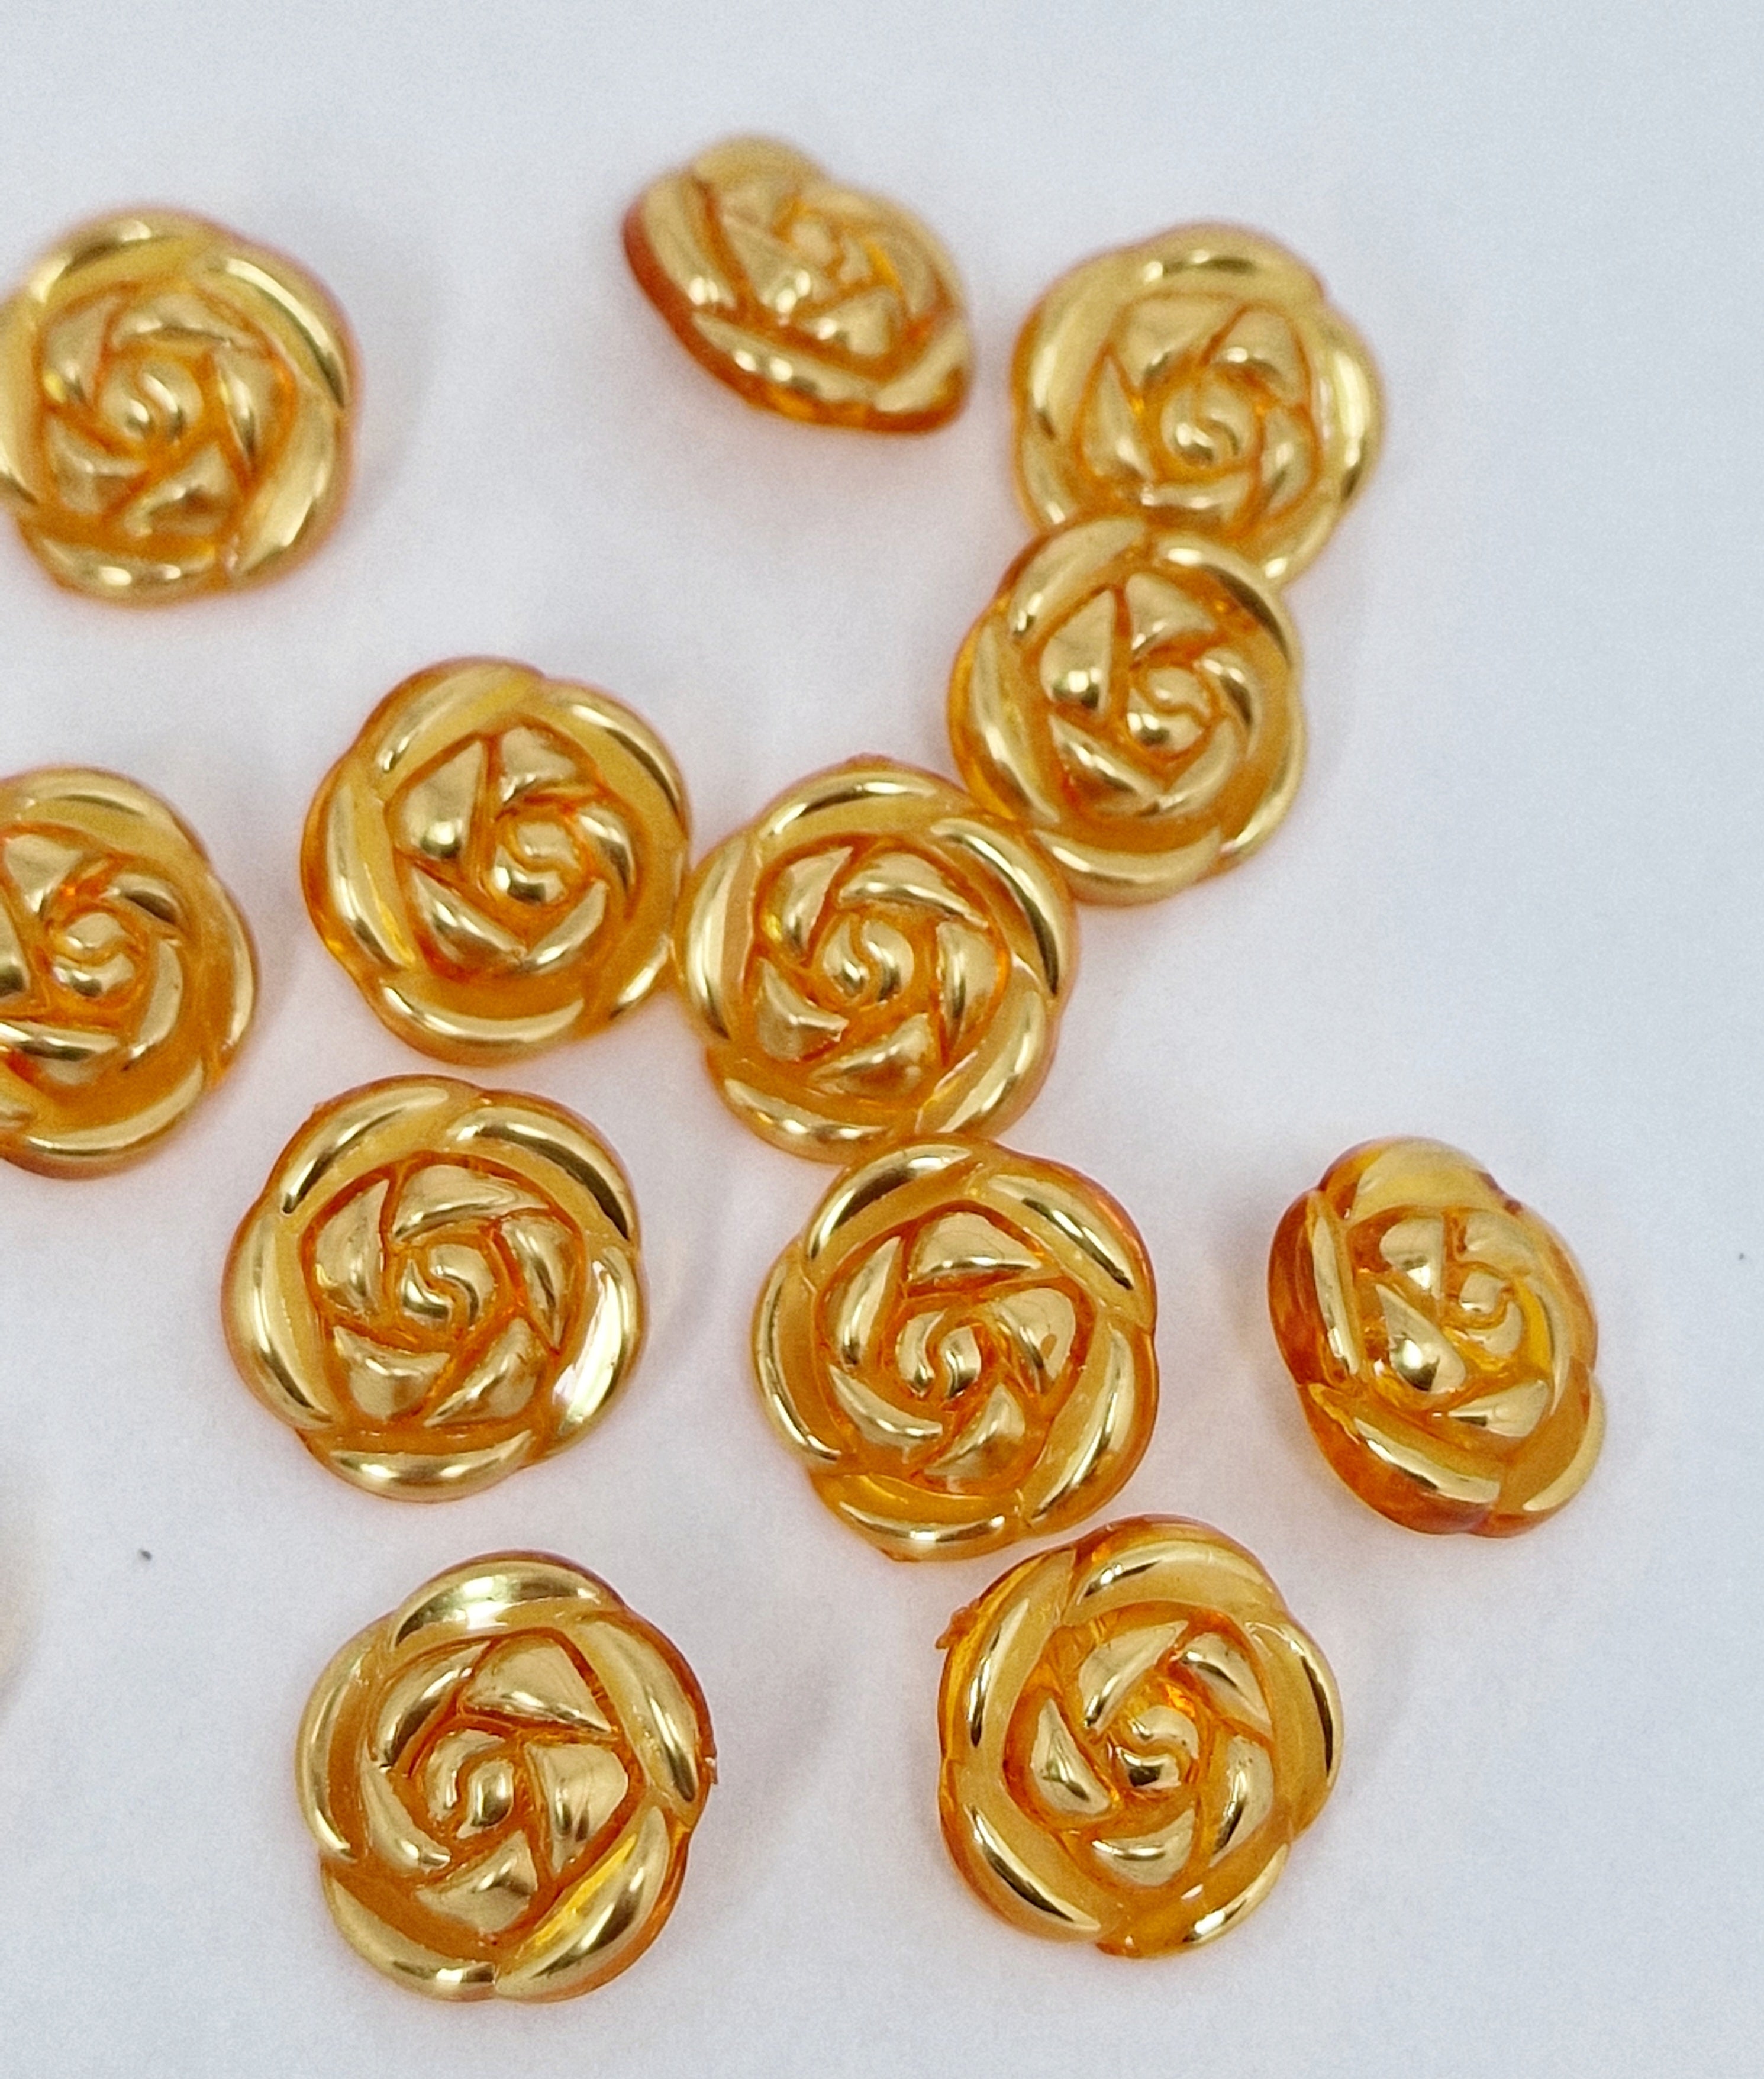 MajorCrafts 40pcs 13mm Orange & Gold Rose Flower Shank Resin Buttons